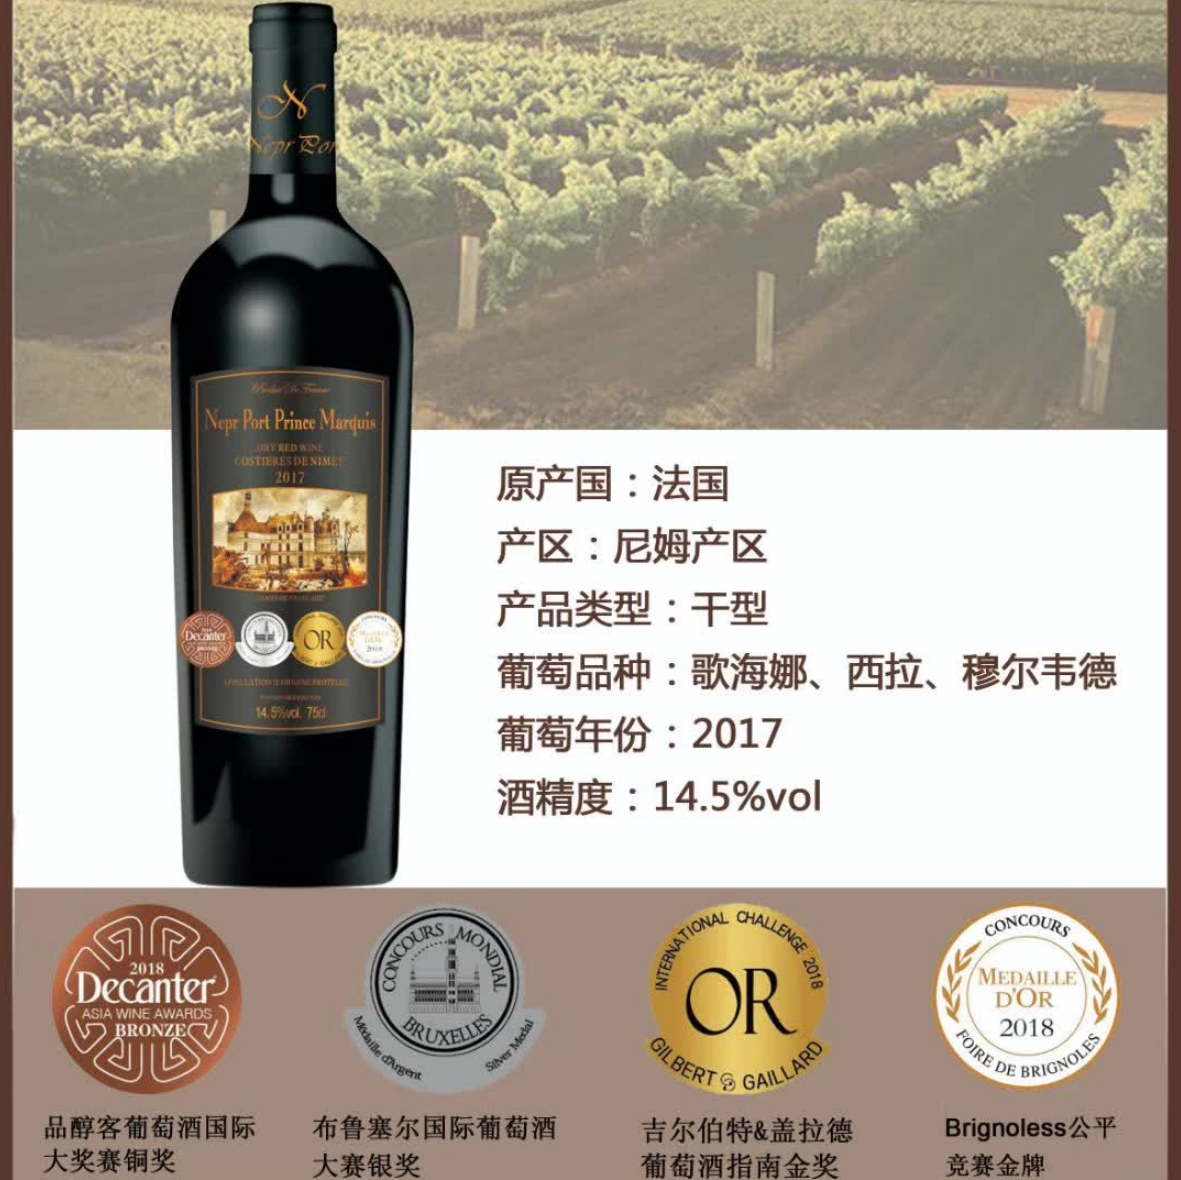 上海万耀诺波特系列王爵干红葡萄酒现货供应法国原装进口AOP级别混酿干红进口酒水代理加盟